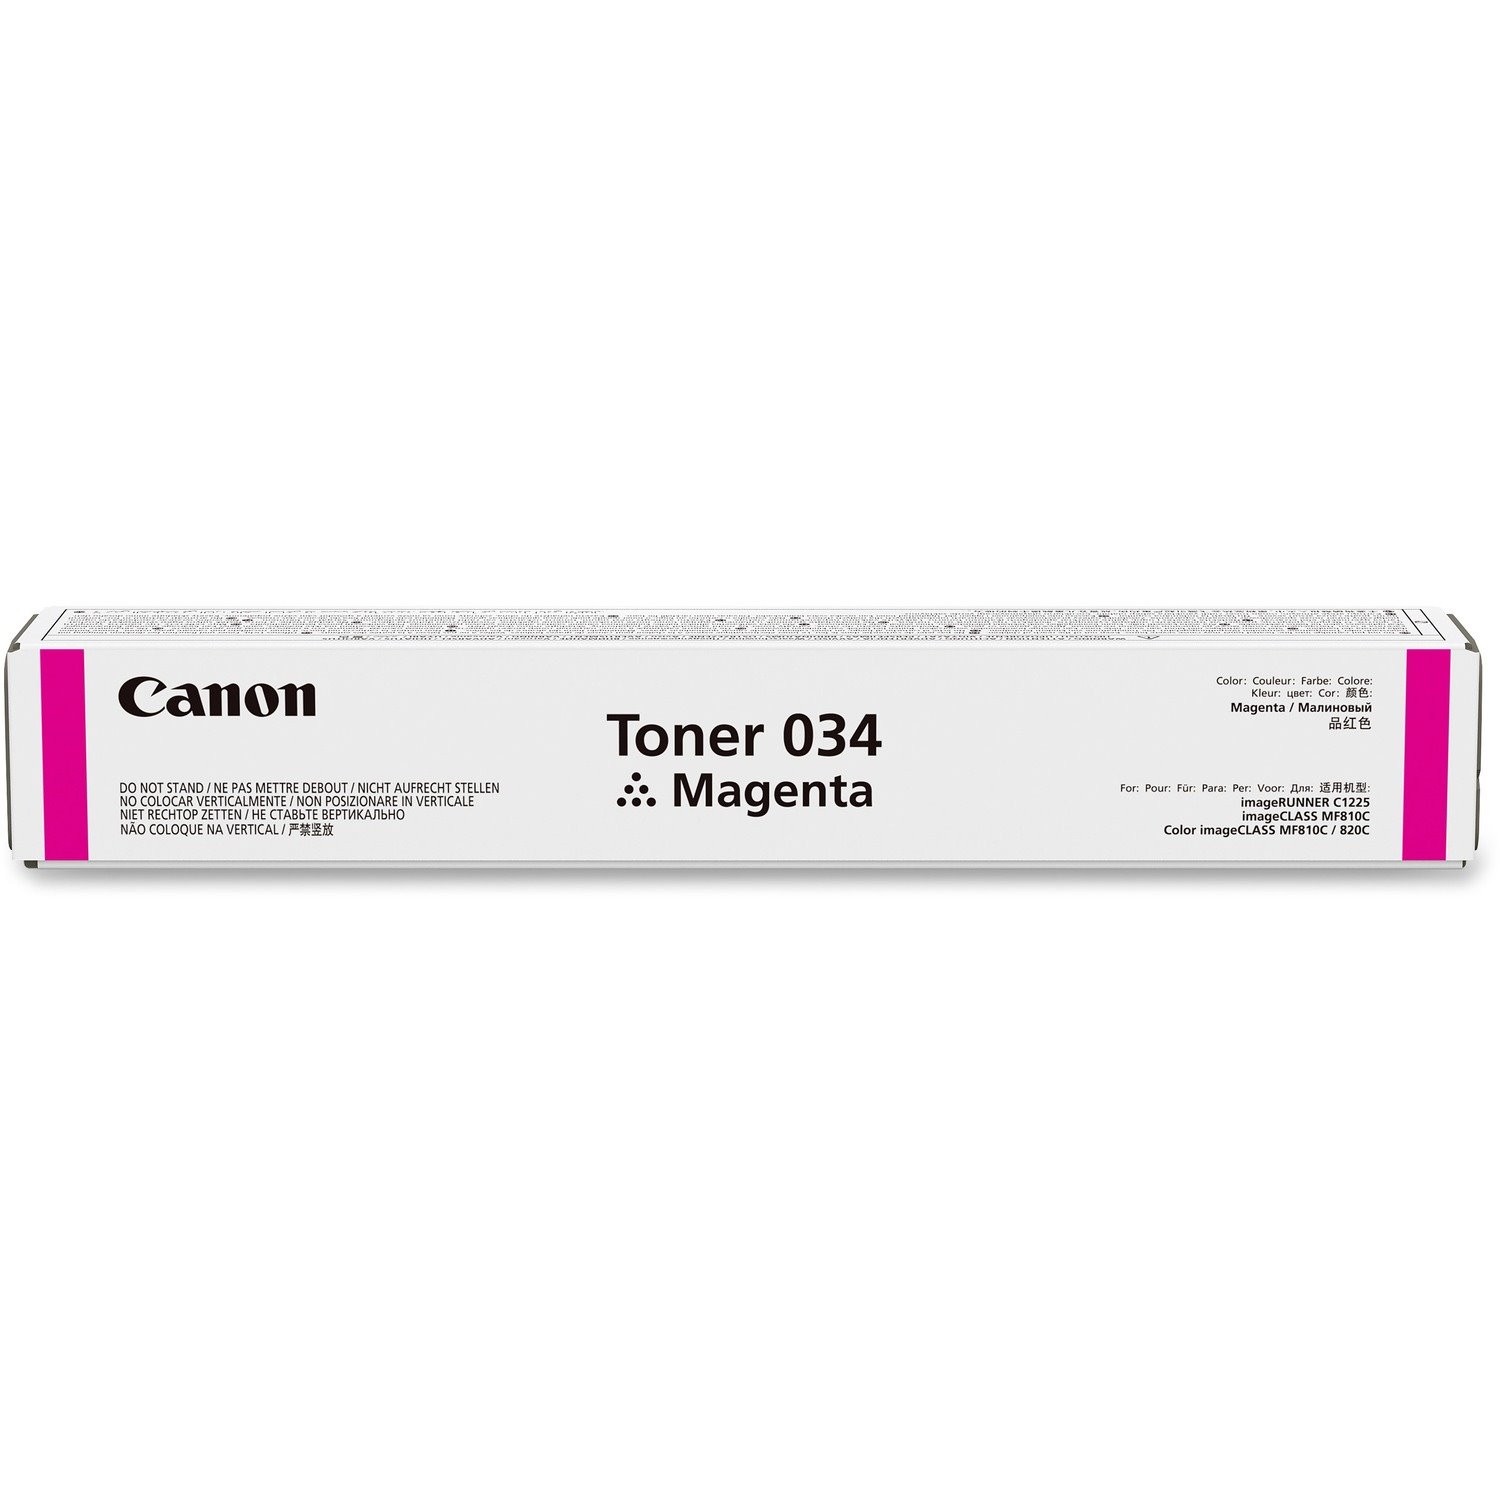 Canon Original Laser Toner Cartridge - Magenta Pack